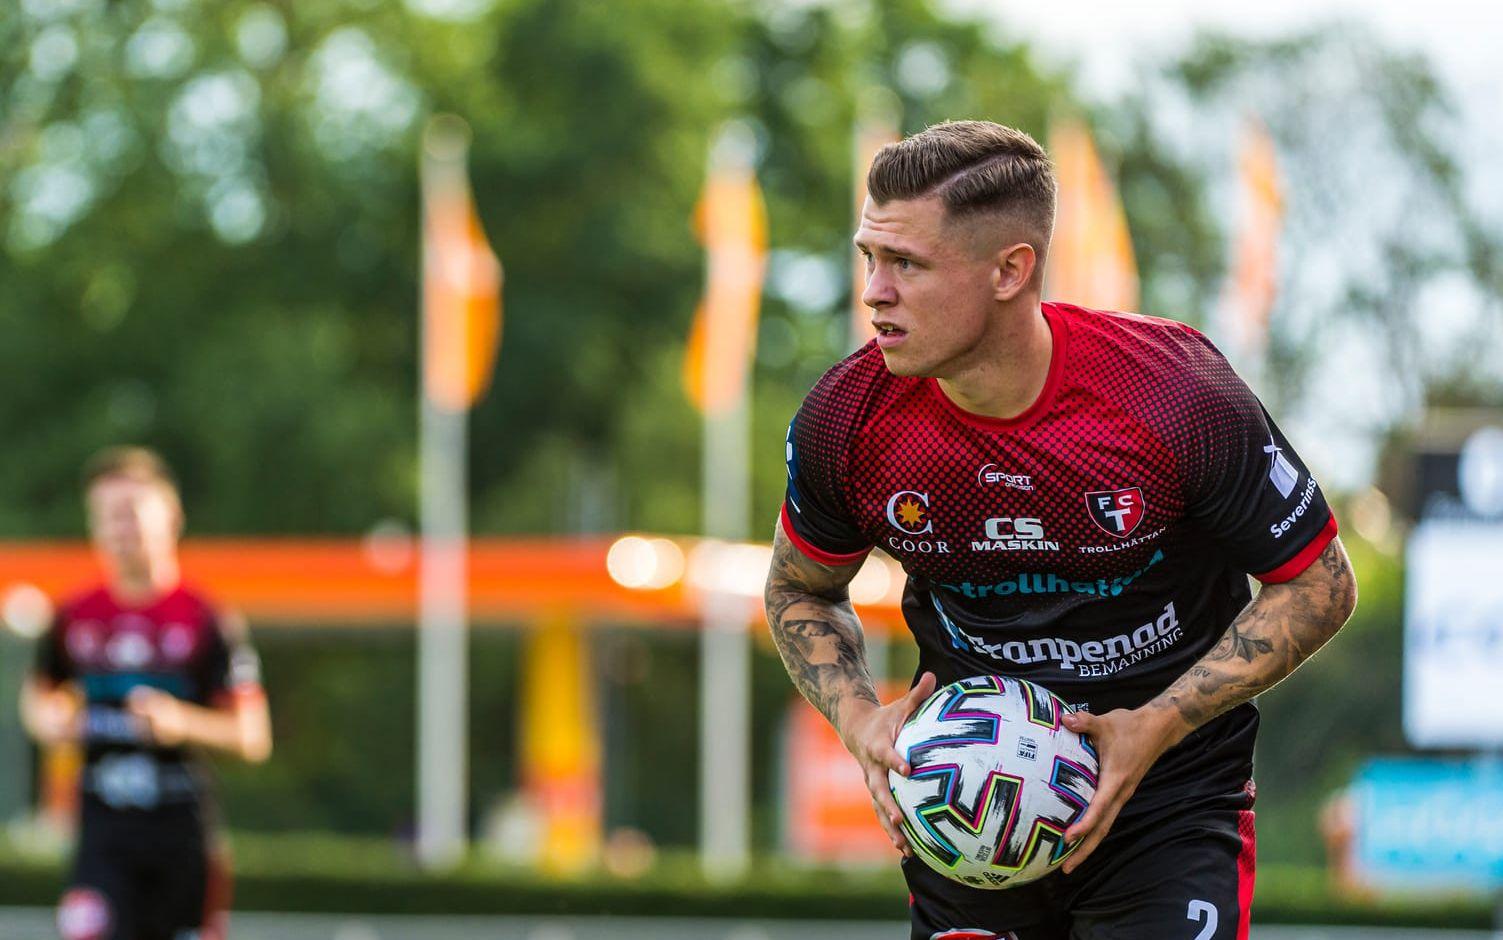 FCT:s Samuel Rundqvist får inleda säsongen i Oskarshamn och sedan ta emot rivalen Vänersborgs IF.